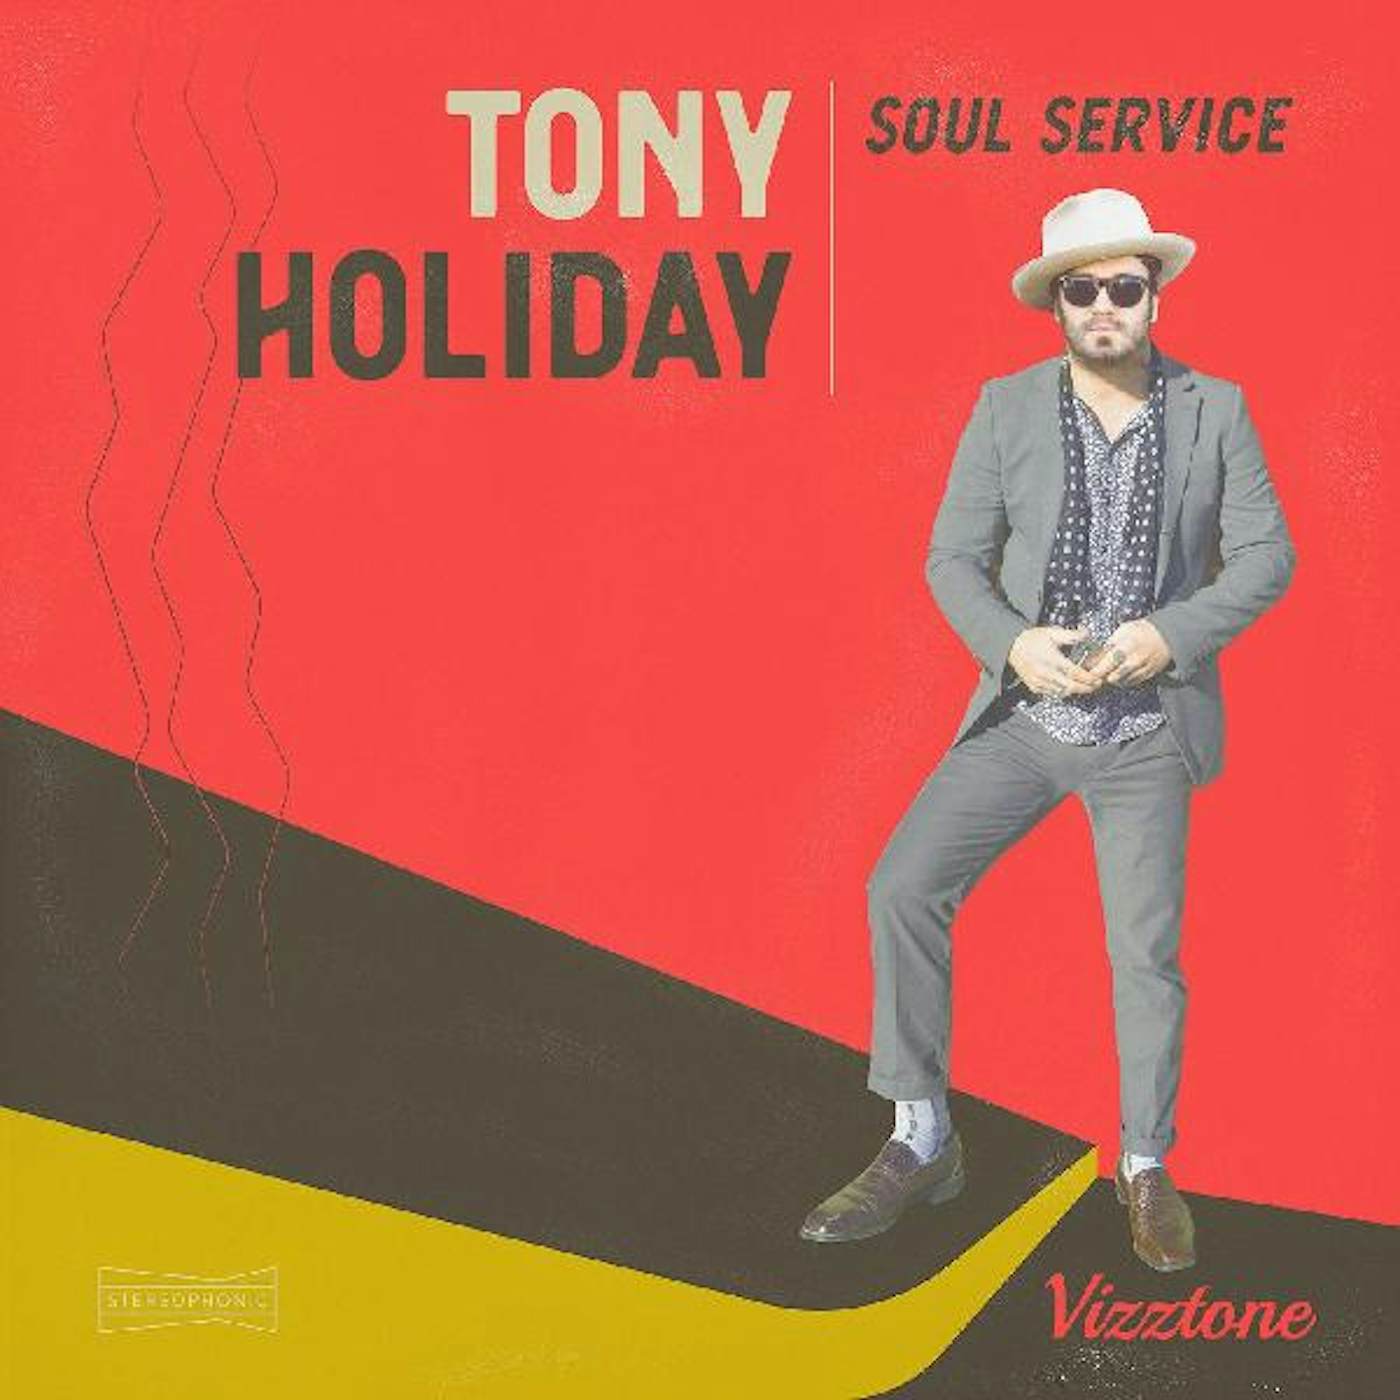 Tony Holiday SOUL SERVICE CD